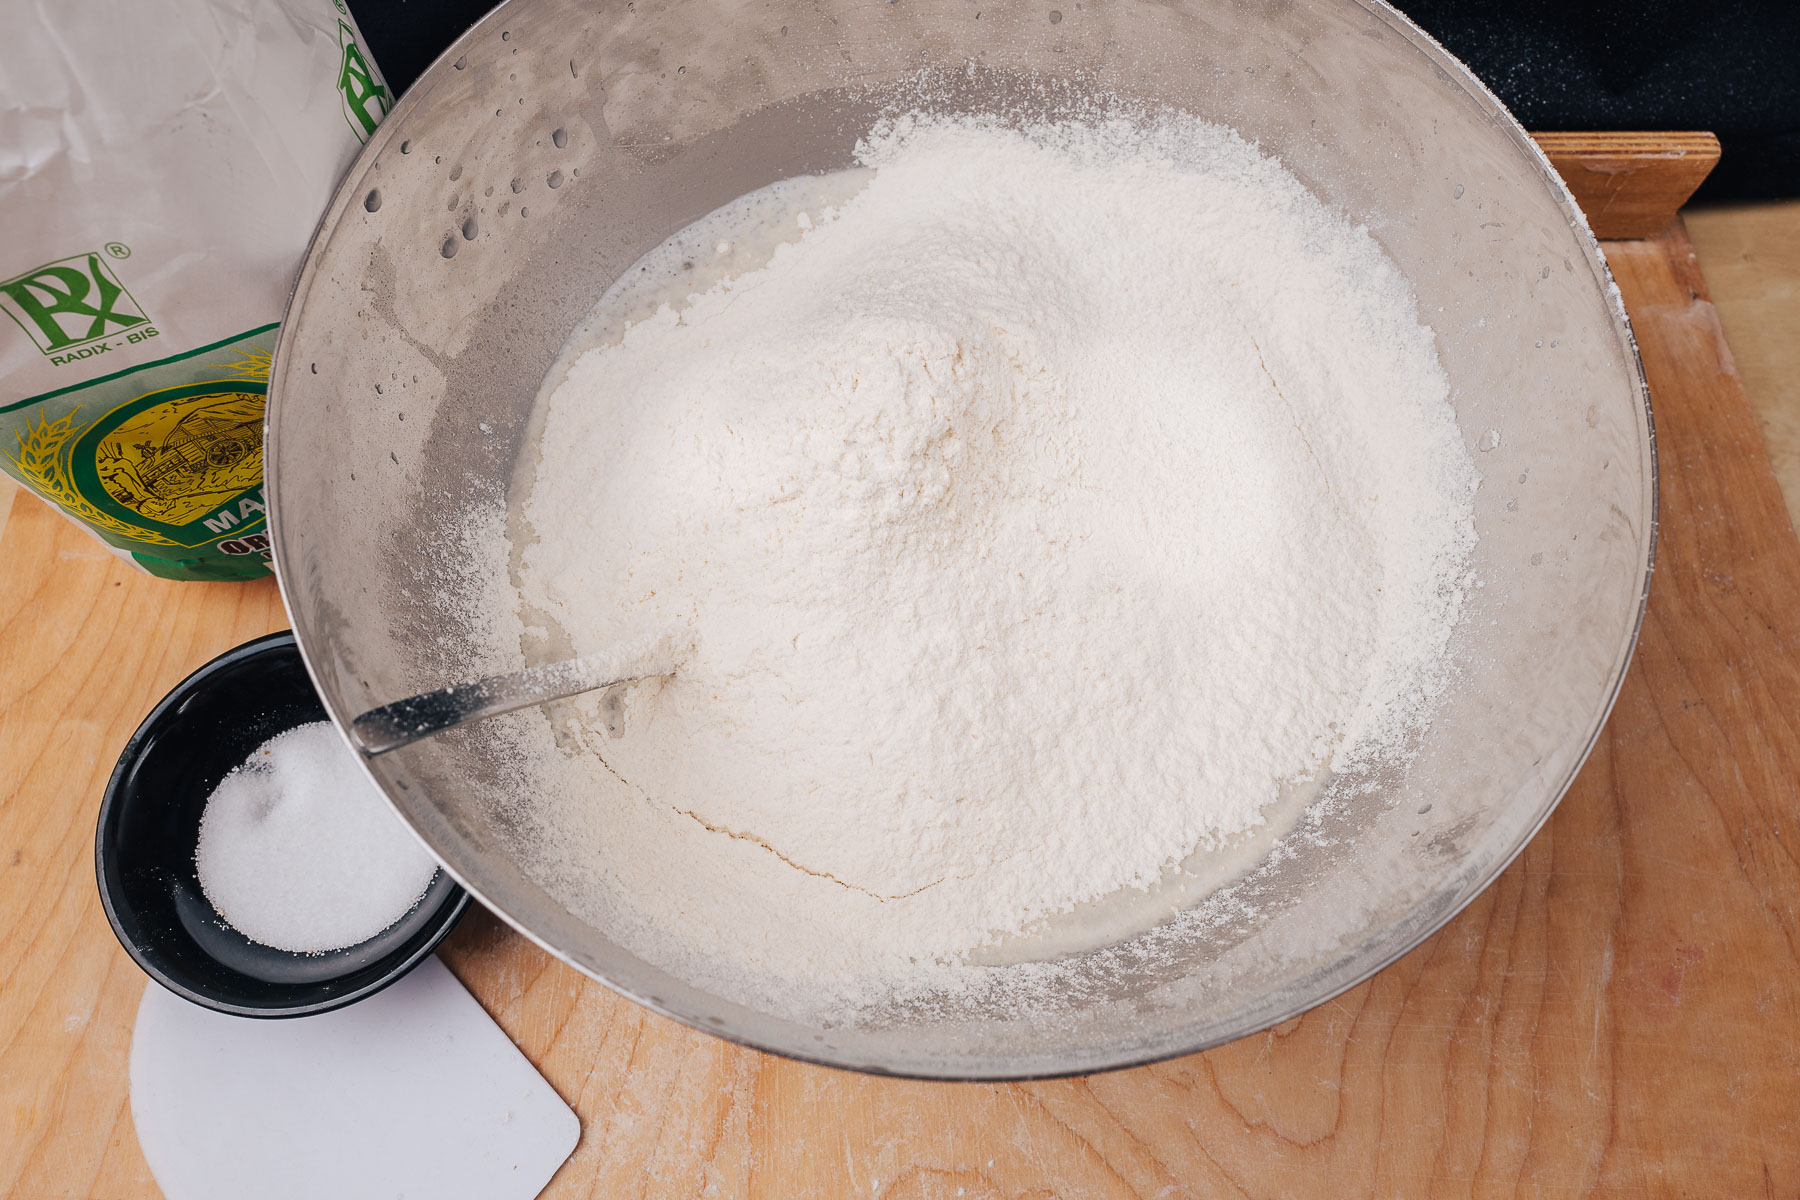 Wsyp do miski z wodą i zakwasem około połowy przygotowanej mąki i zacznij mieszać.